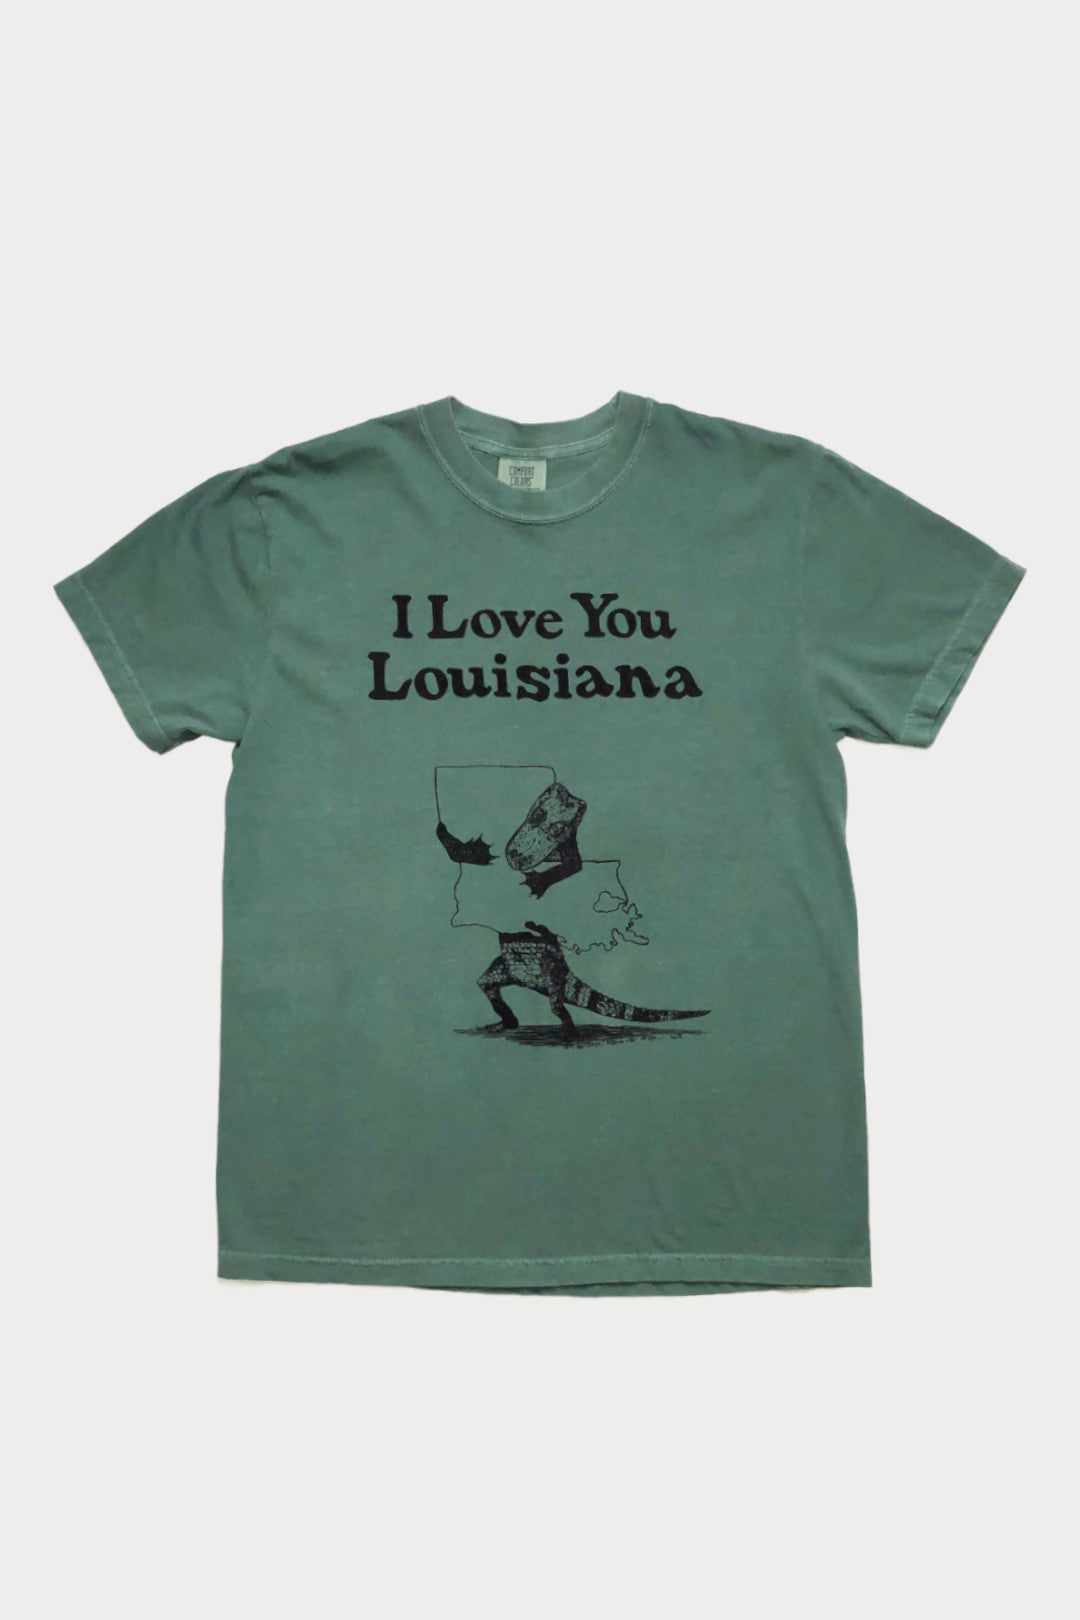 Vtg 80s Pop Art Louisiana Girl t Shirt